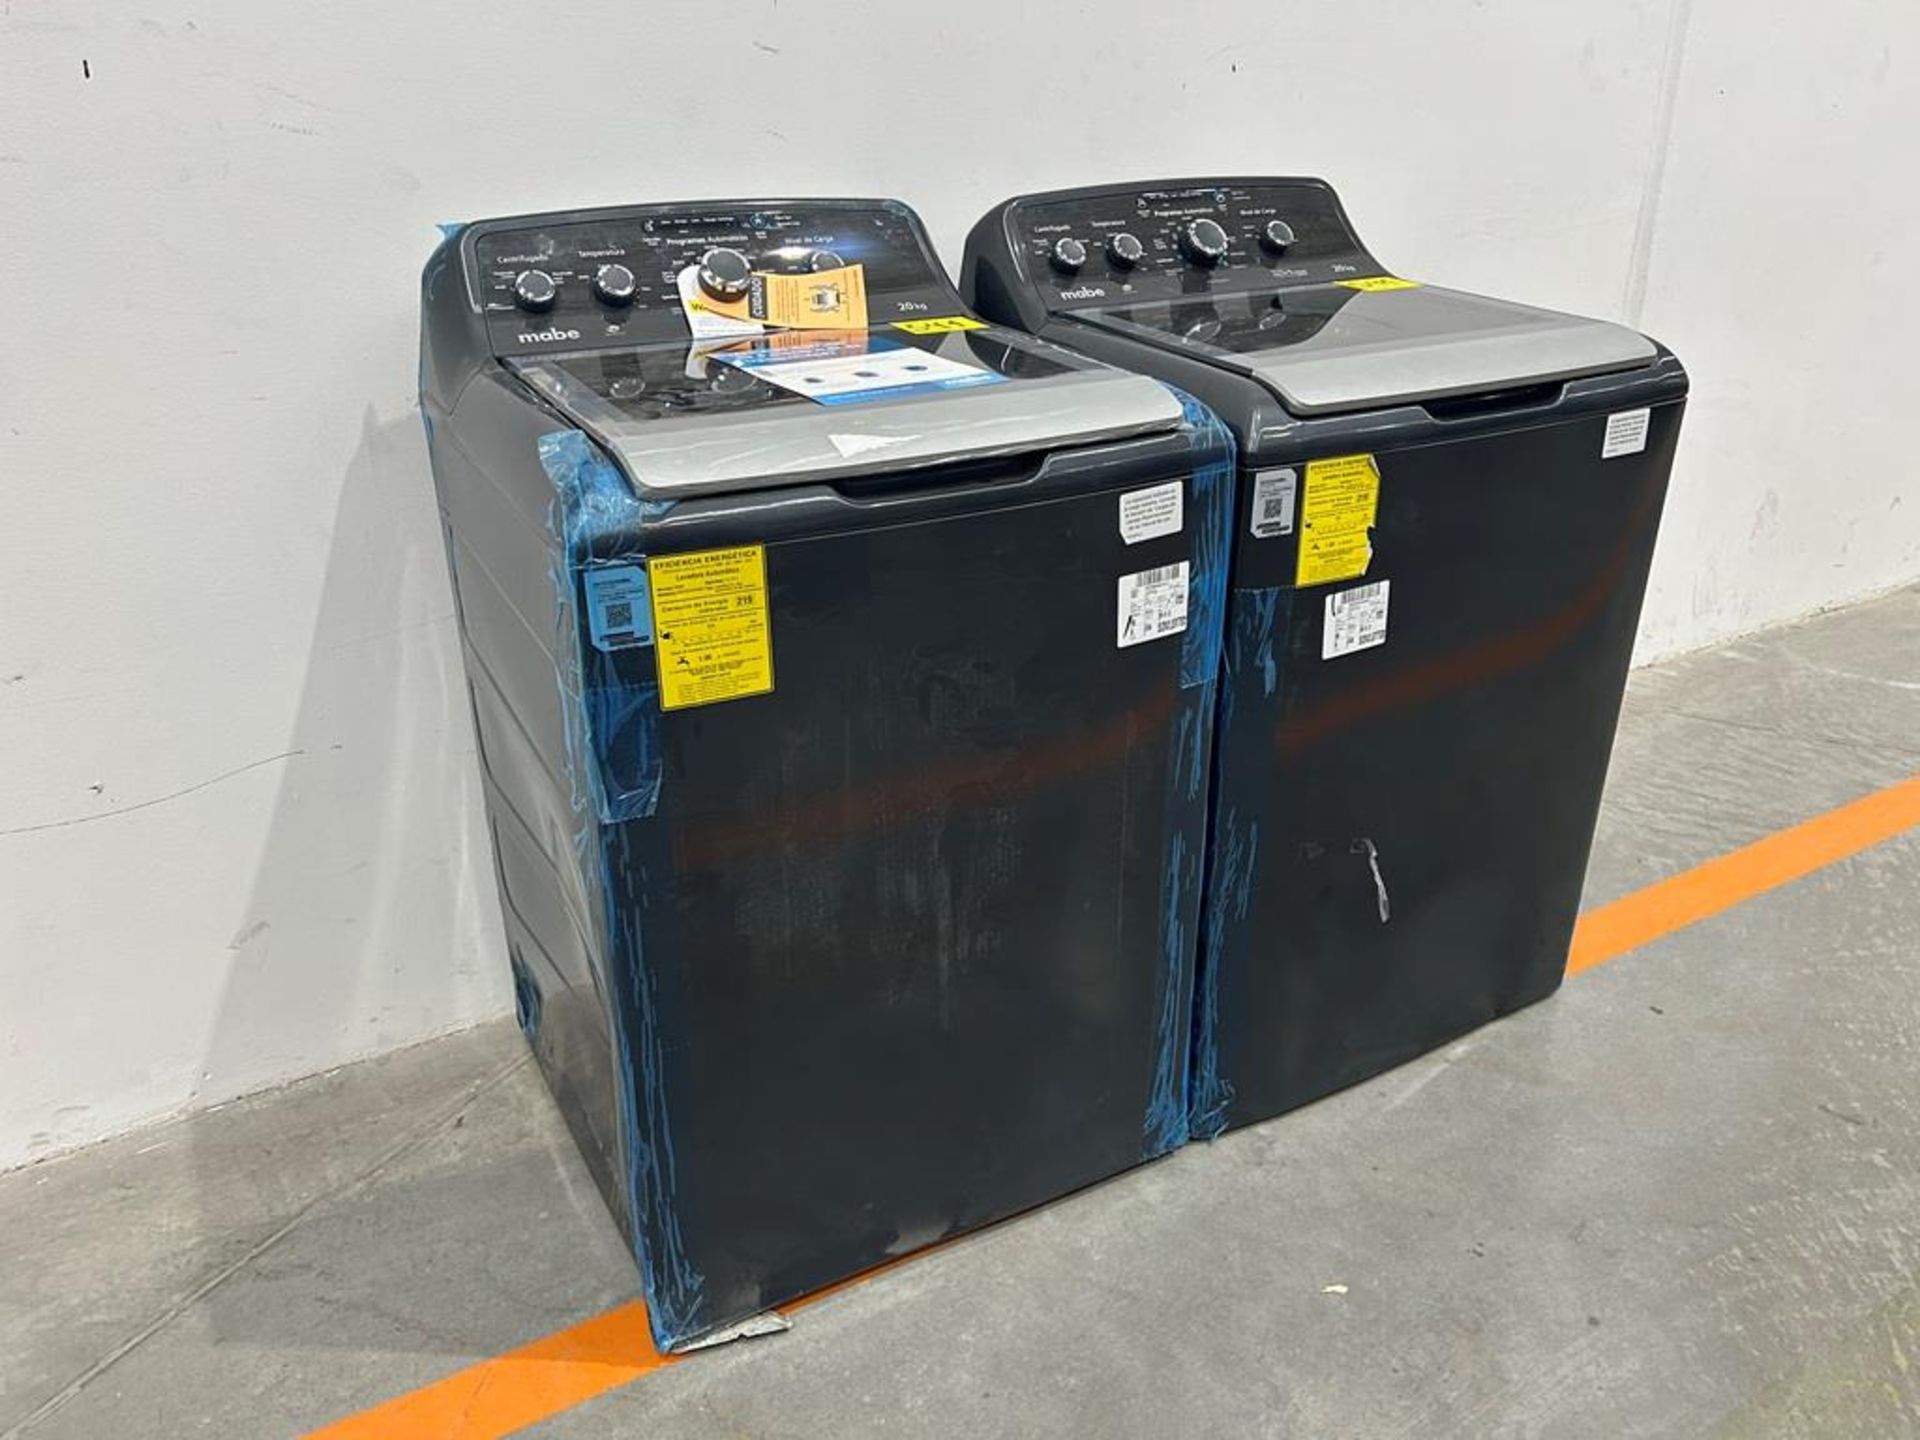 Lote de 2 lavadoras contiene: 1 Lavadora de 20KG Marca MABE, Modelo LMX70214WDAB00, Serie S09985, C - Image 2 of 10